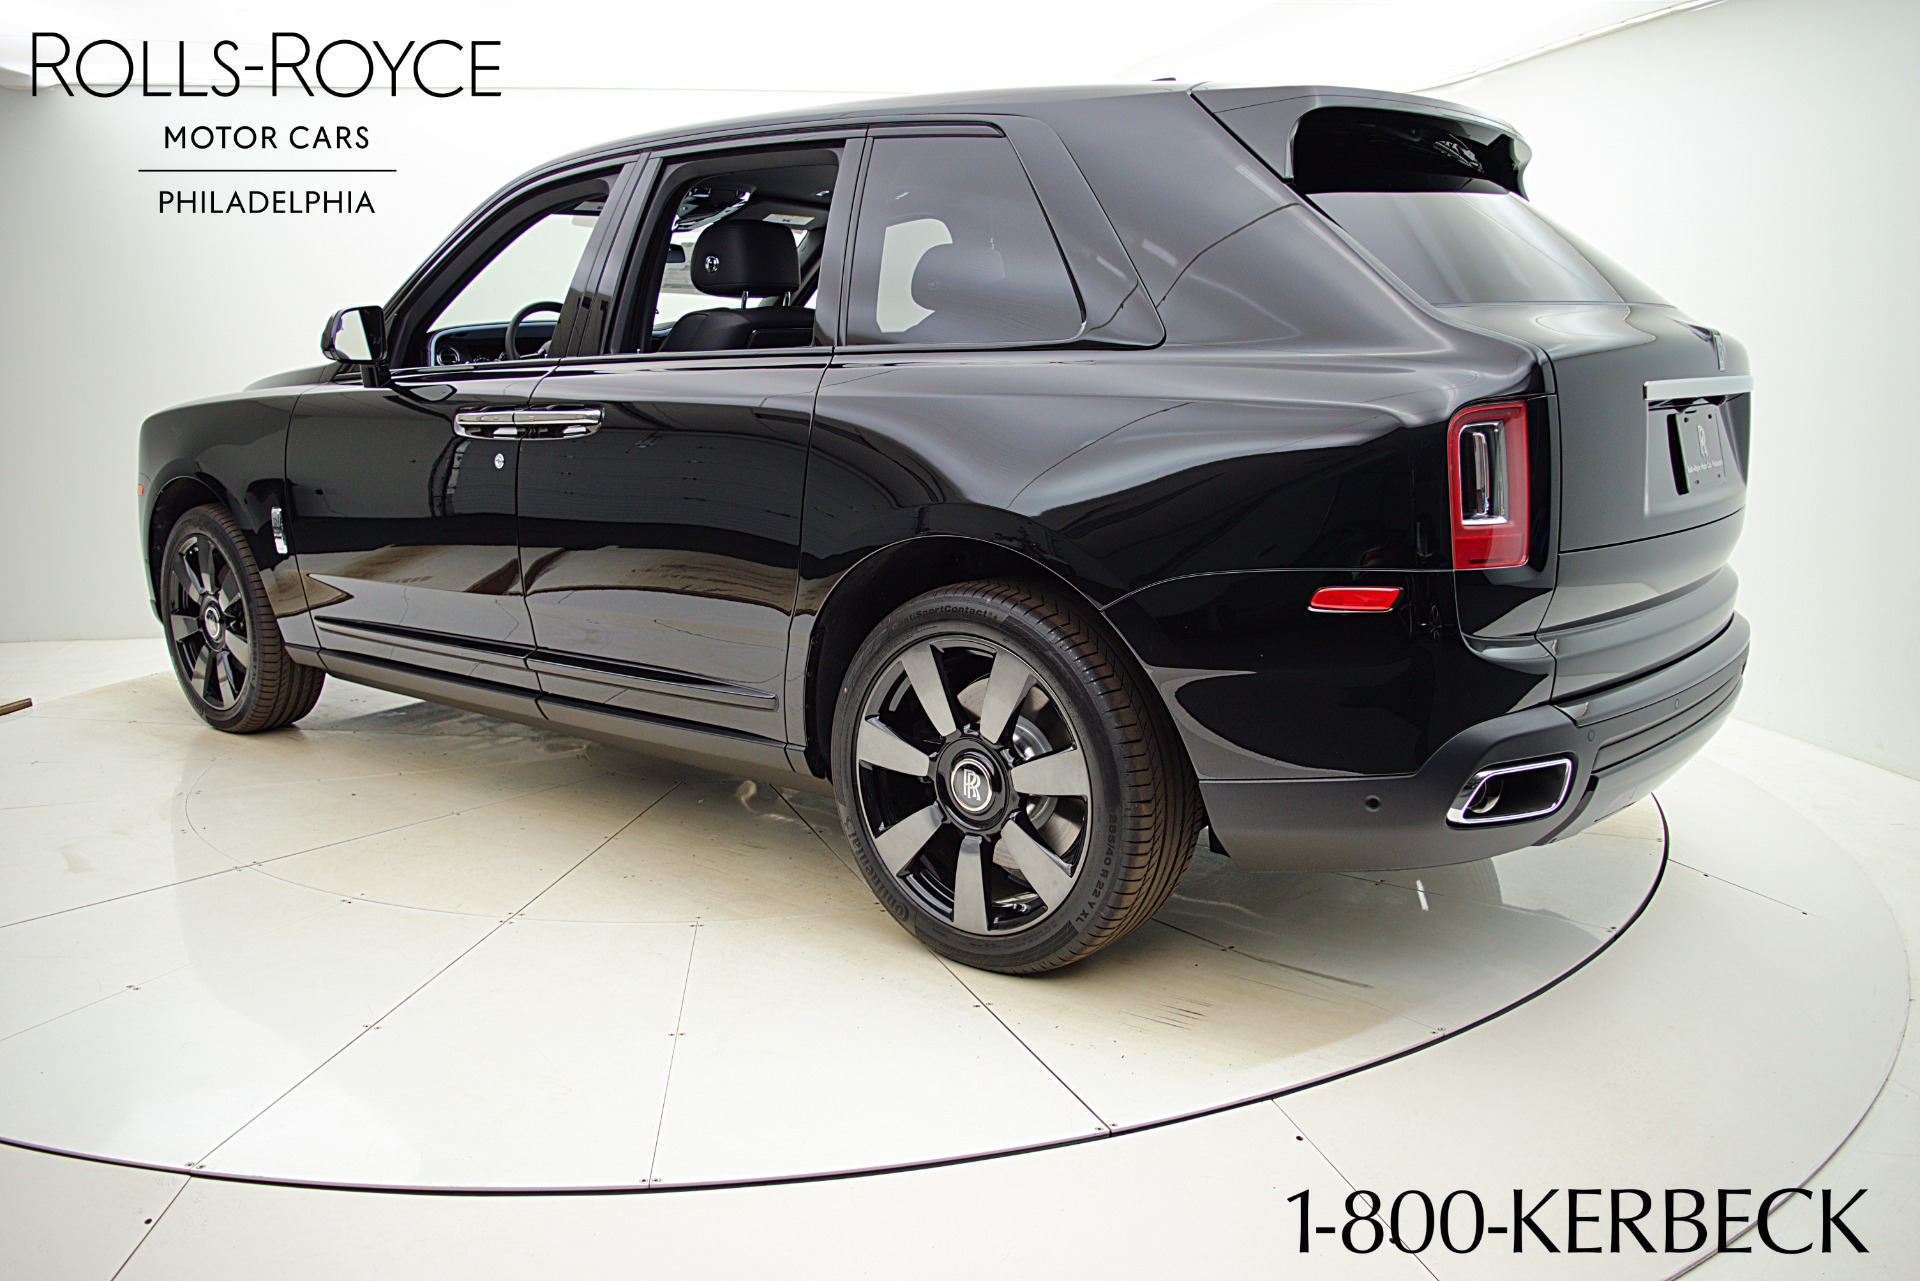 New 2021 Rolls-Royce Cullinan For Sale ($375,900)  Rolls-Royce Motor Cars  Philadelphia Stock #21R113